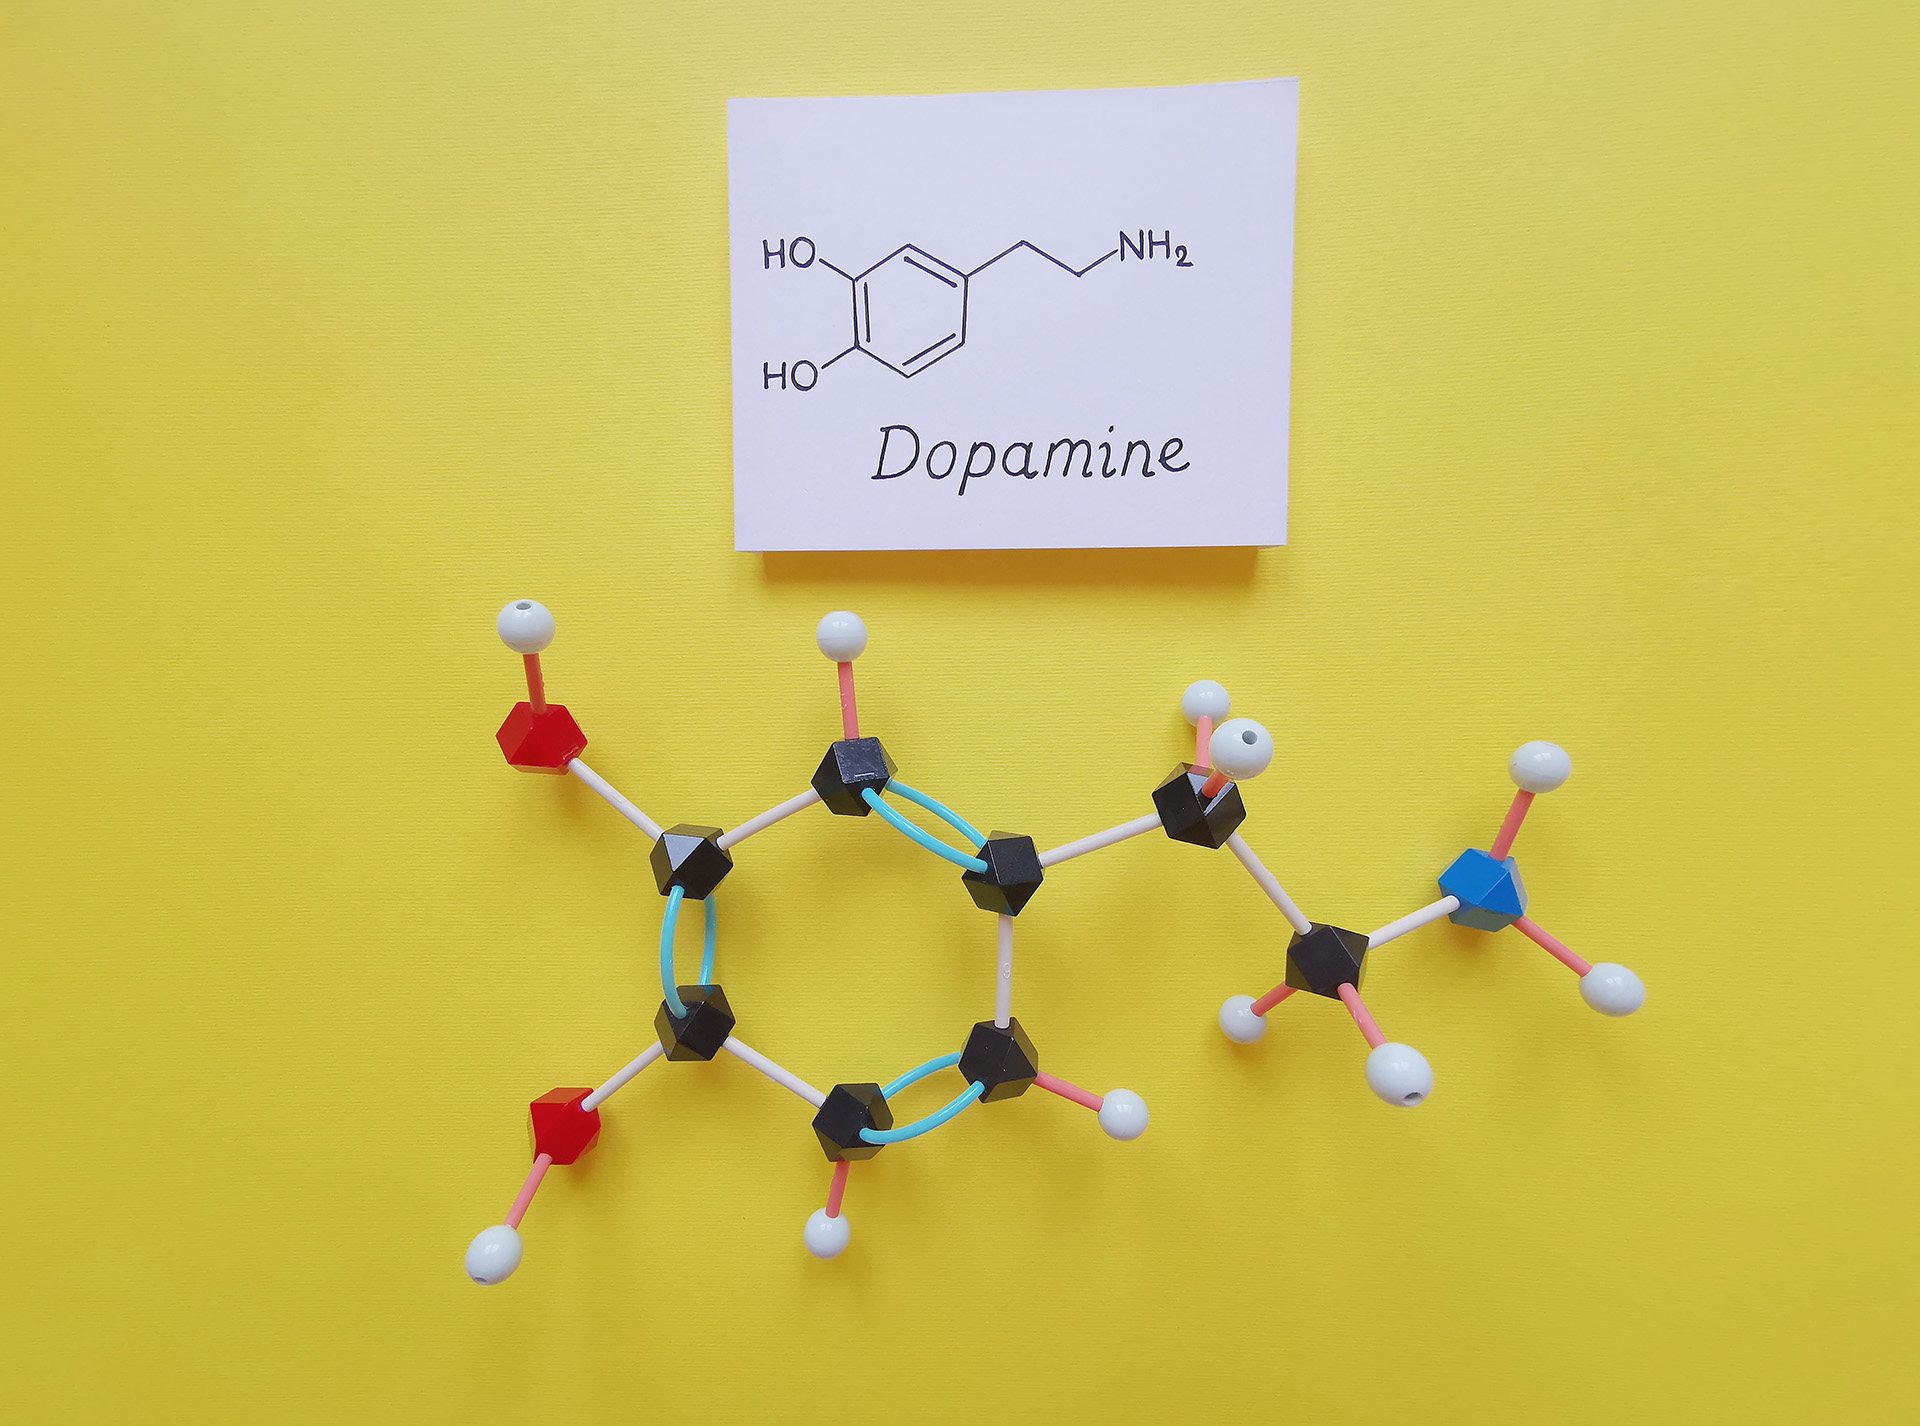 Robado de la tendencia de la industria de la moda de “vestirse con dopamina”, está surgiendo una nueva tendencia para “viajar con dopamina”